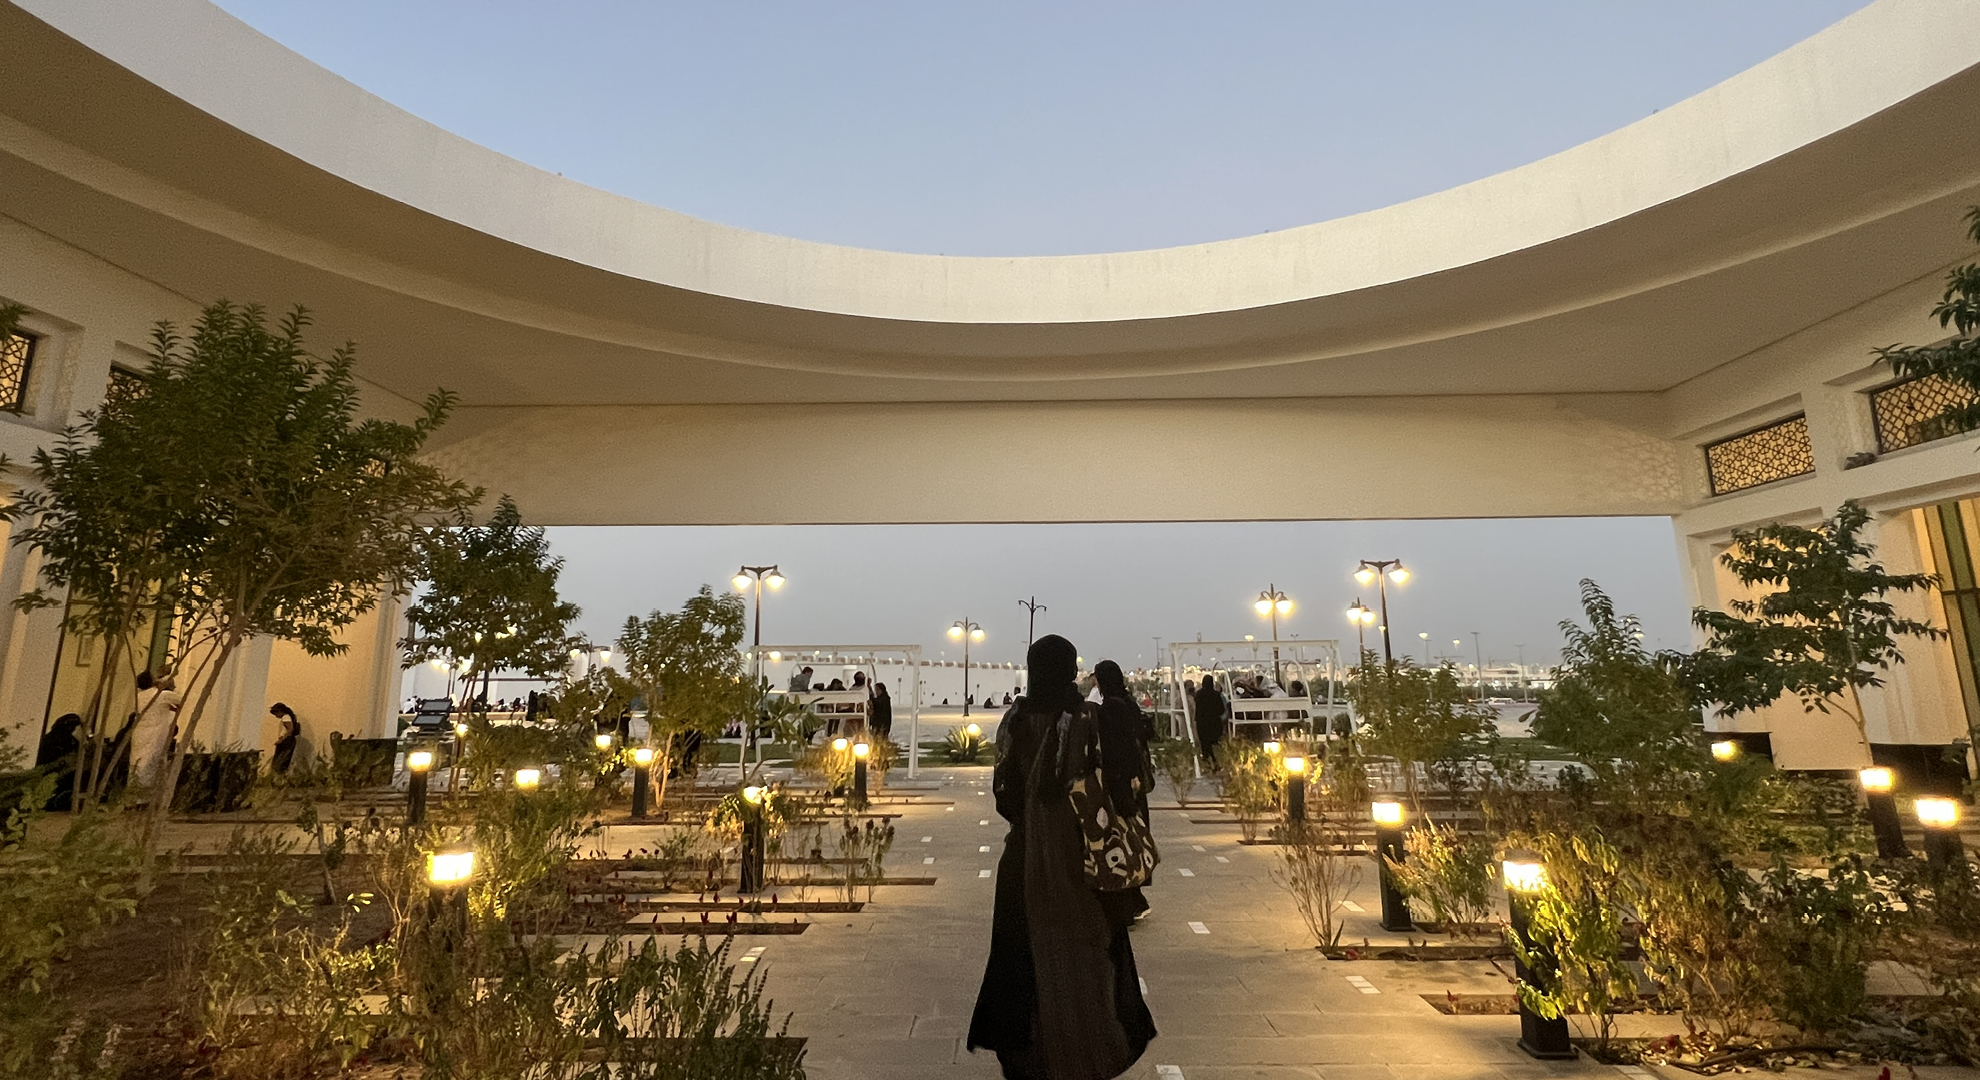 MADINAH ARTS CENTER, MADINAH, SAUDI ARABIA, 2023